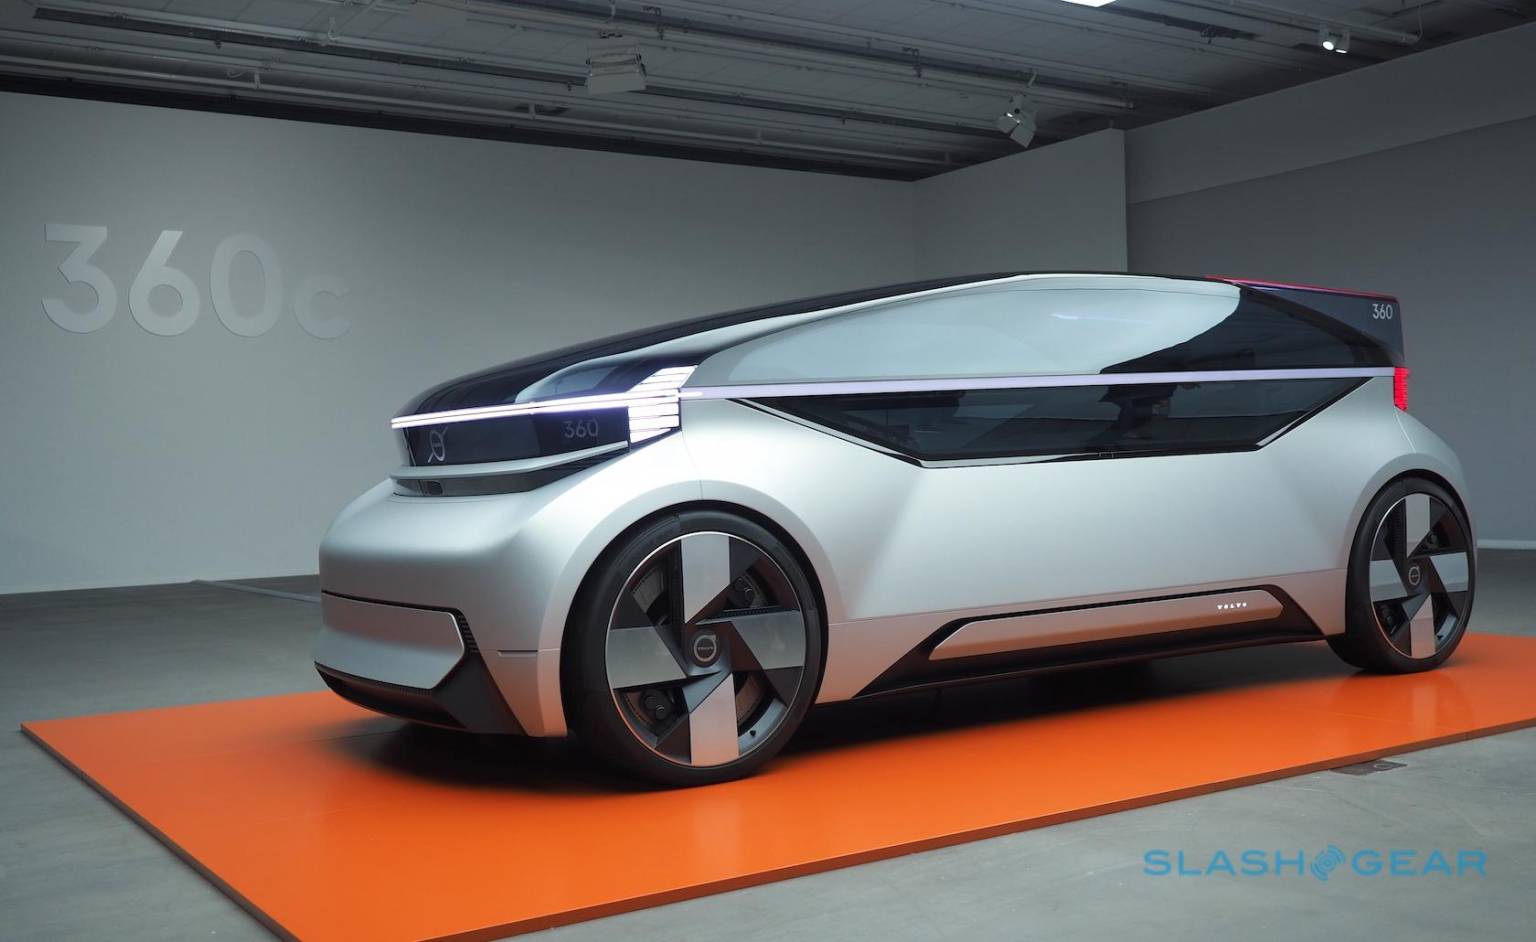 沃尔沃透露其自动驾驶技术将于2022年开始应用